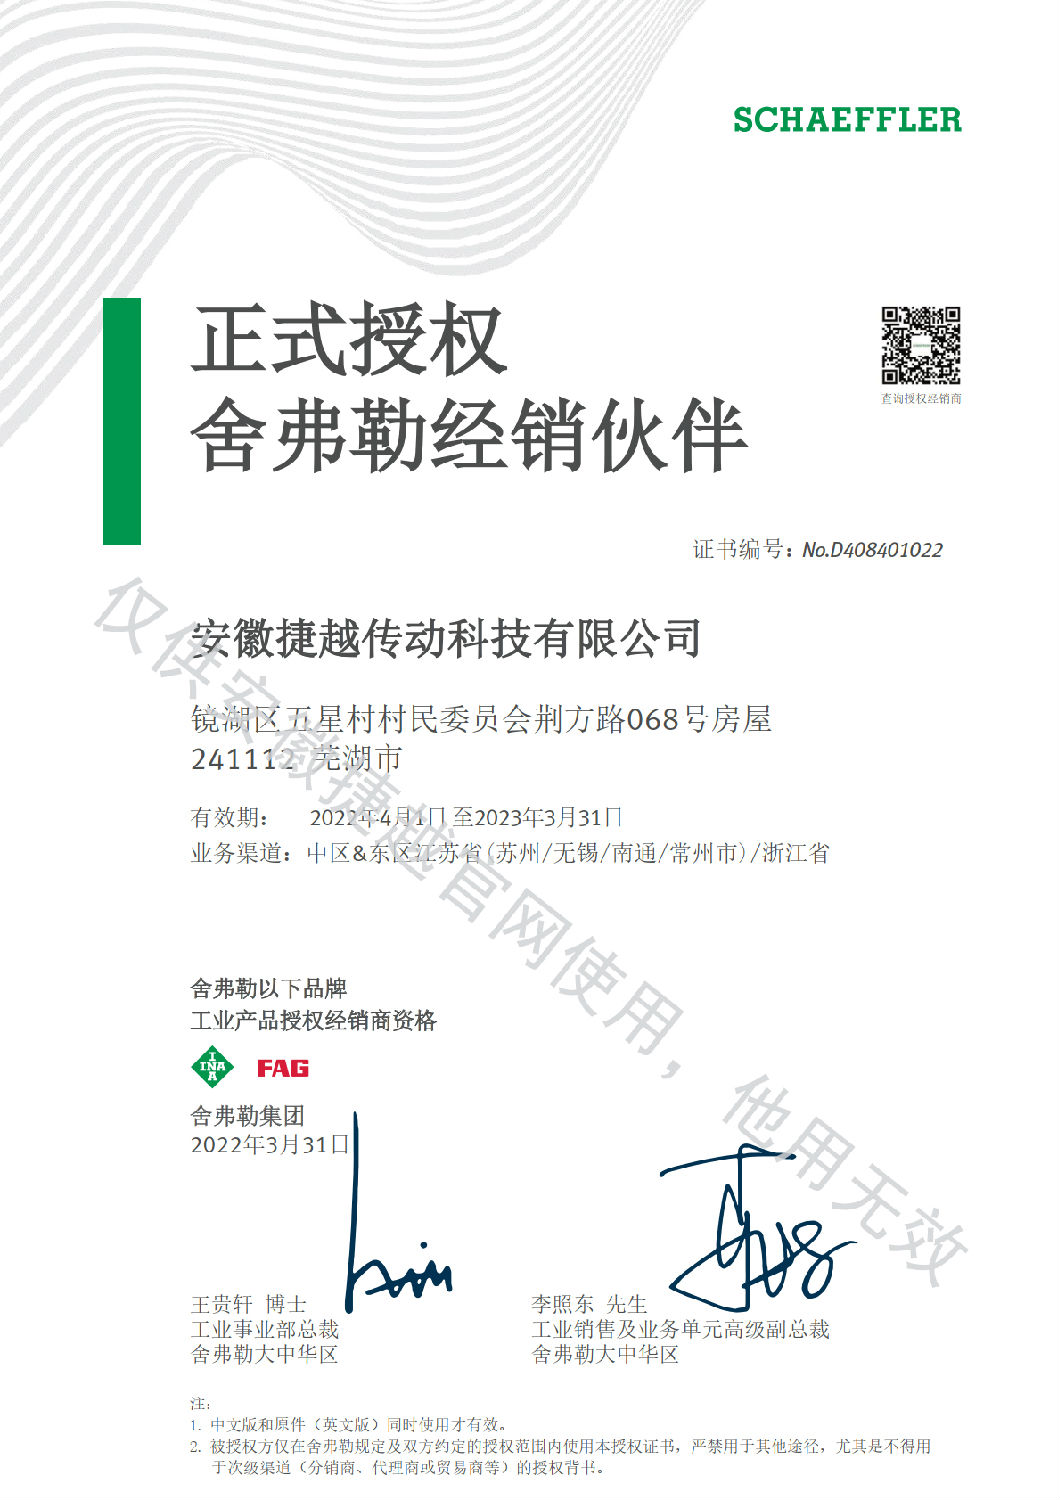 INA&FAG 2022年授权证书中文版